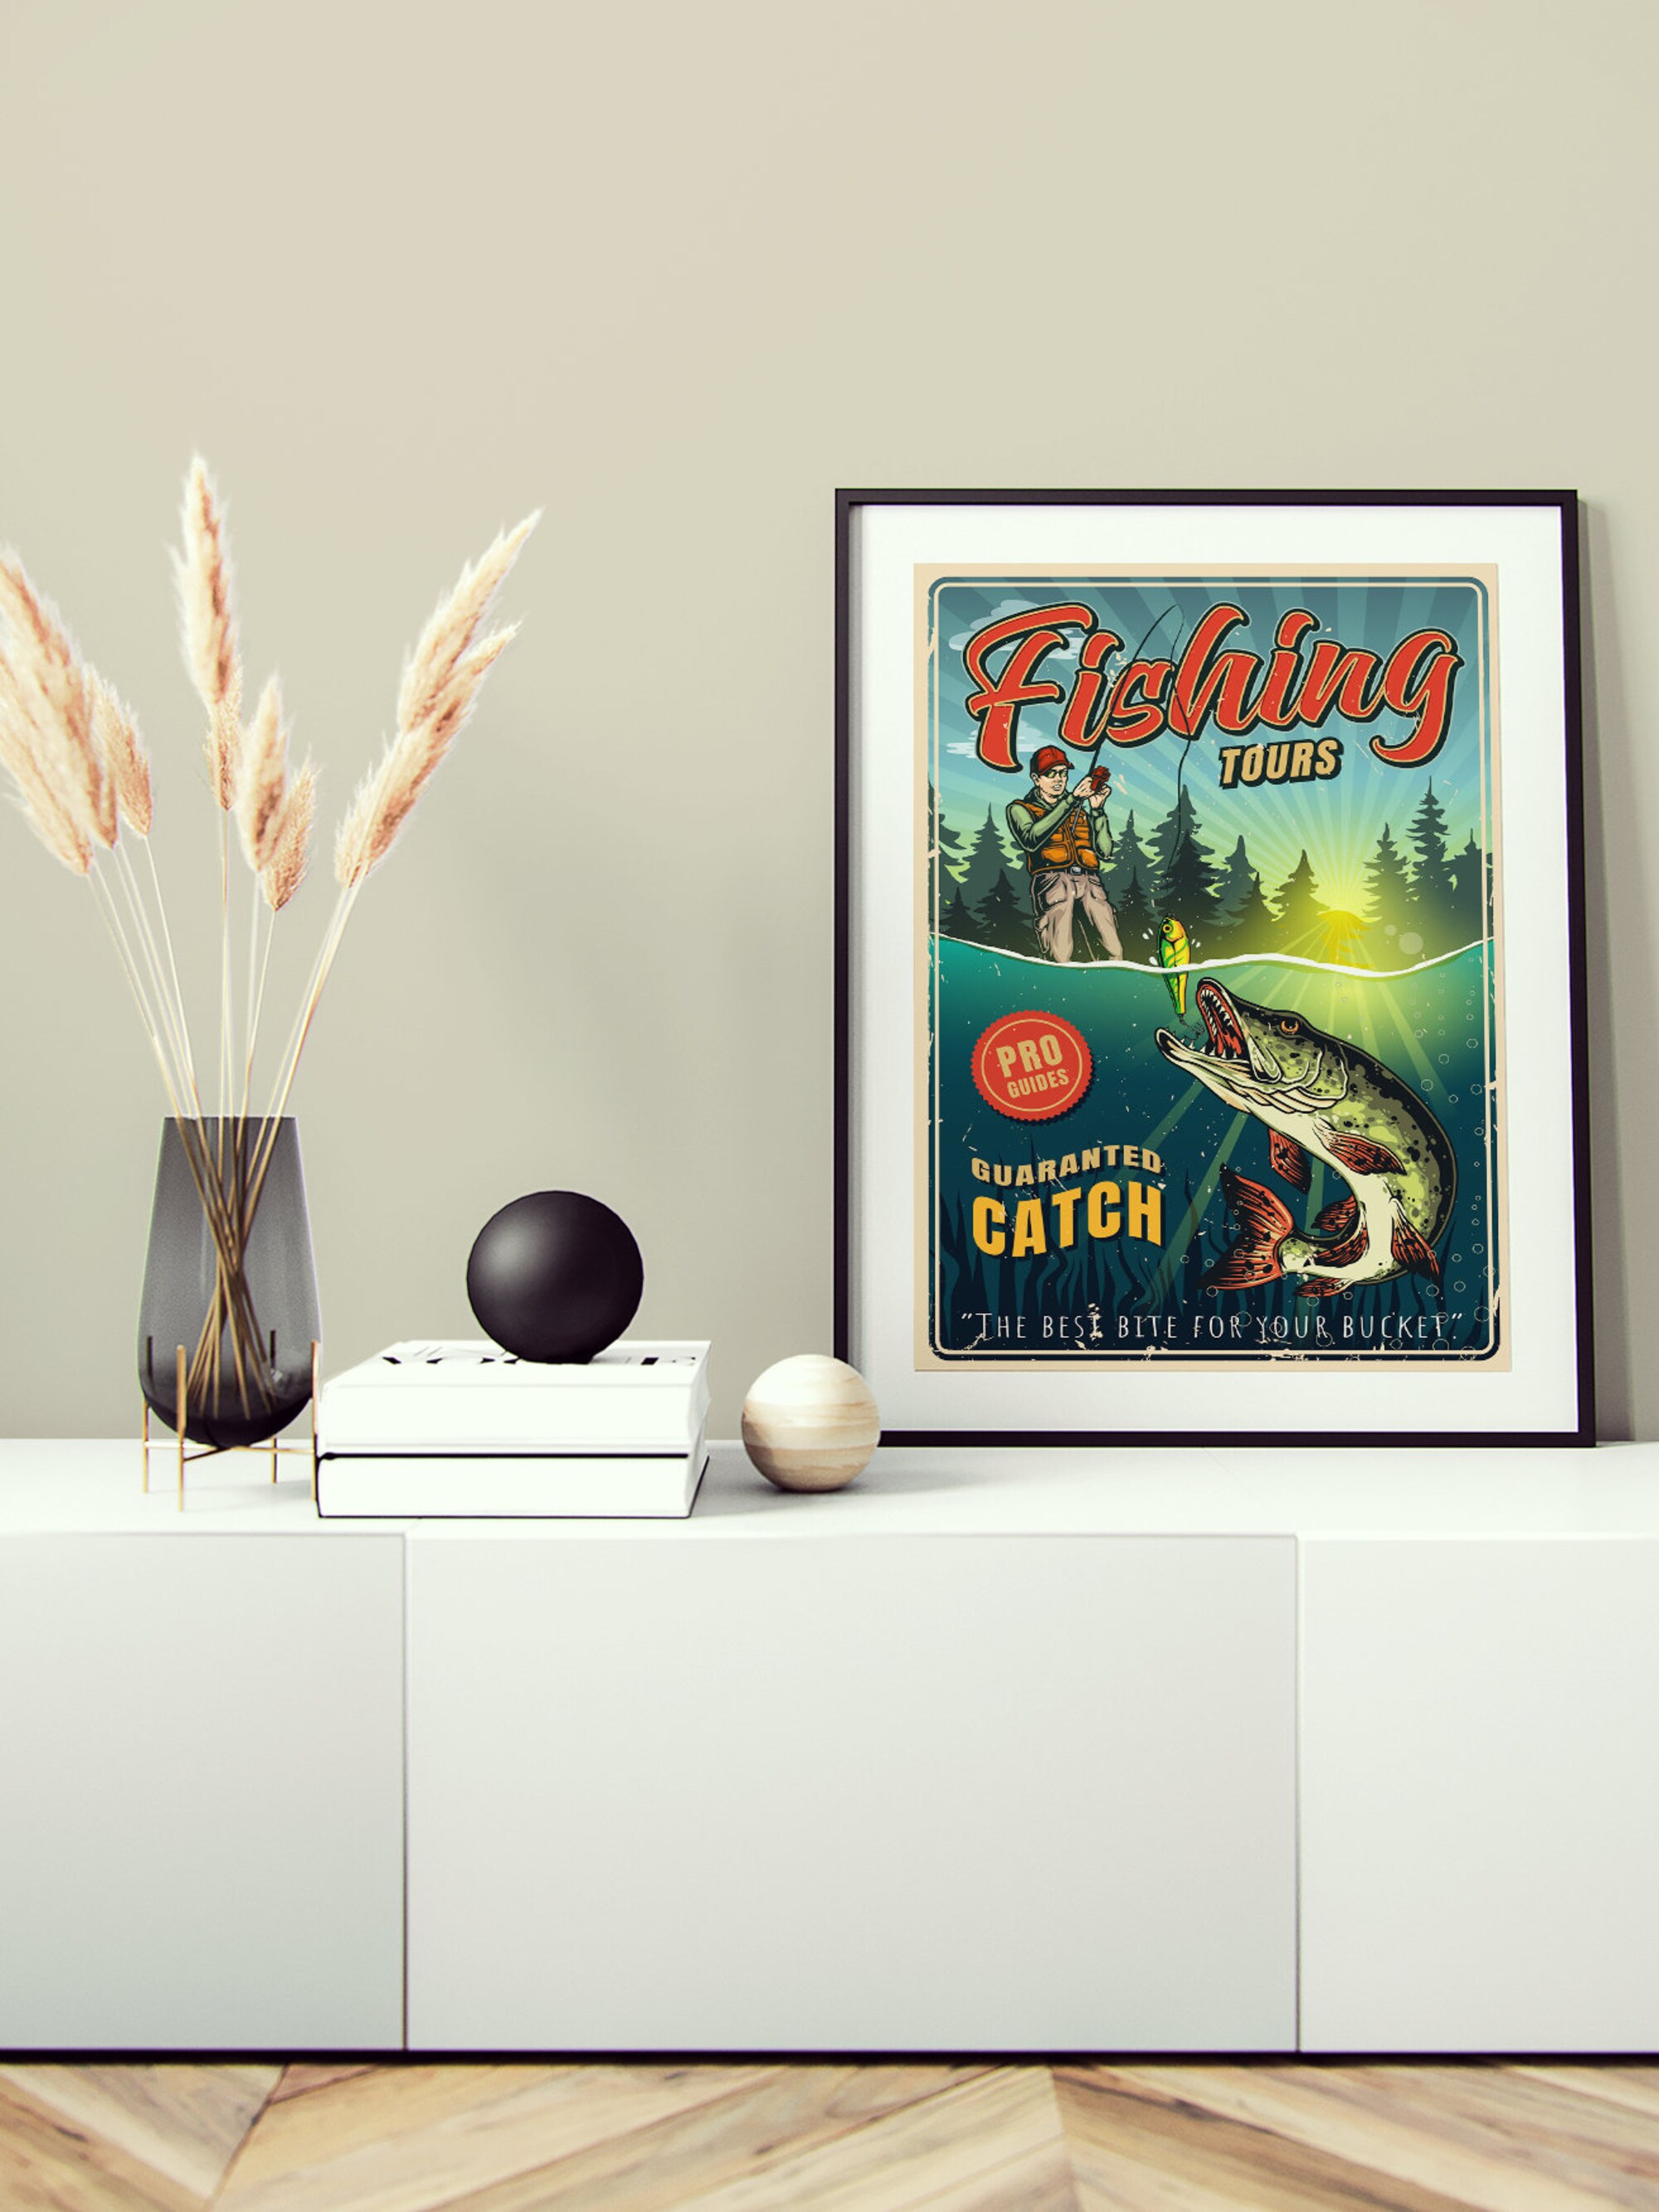 Vintage Fishing Poster - Fishing Tours Art Print